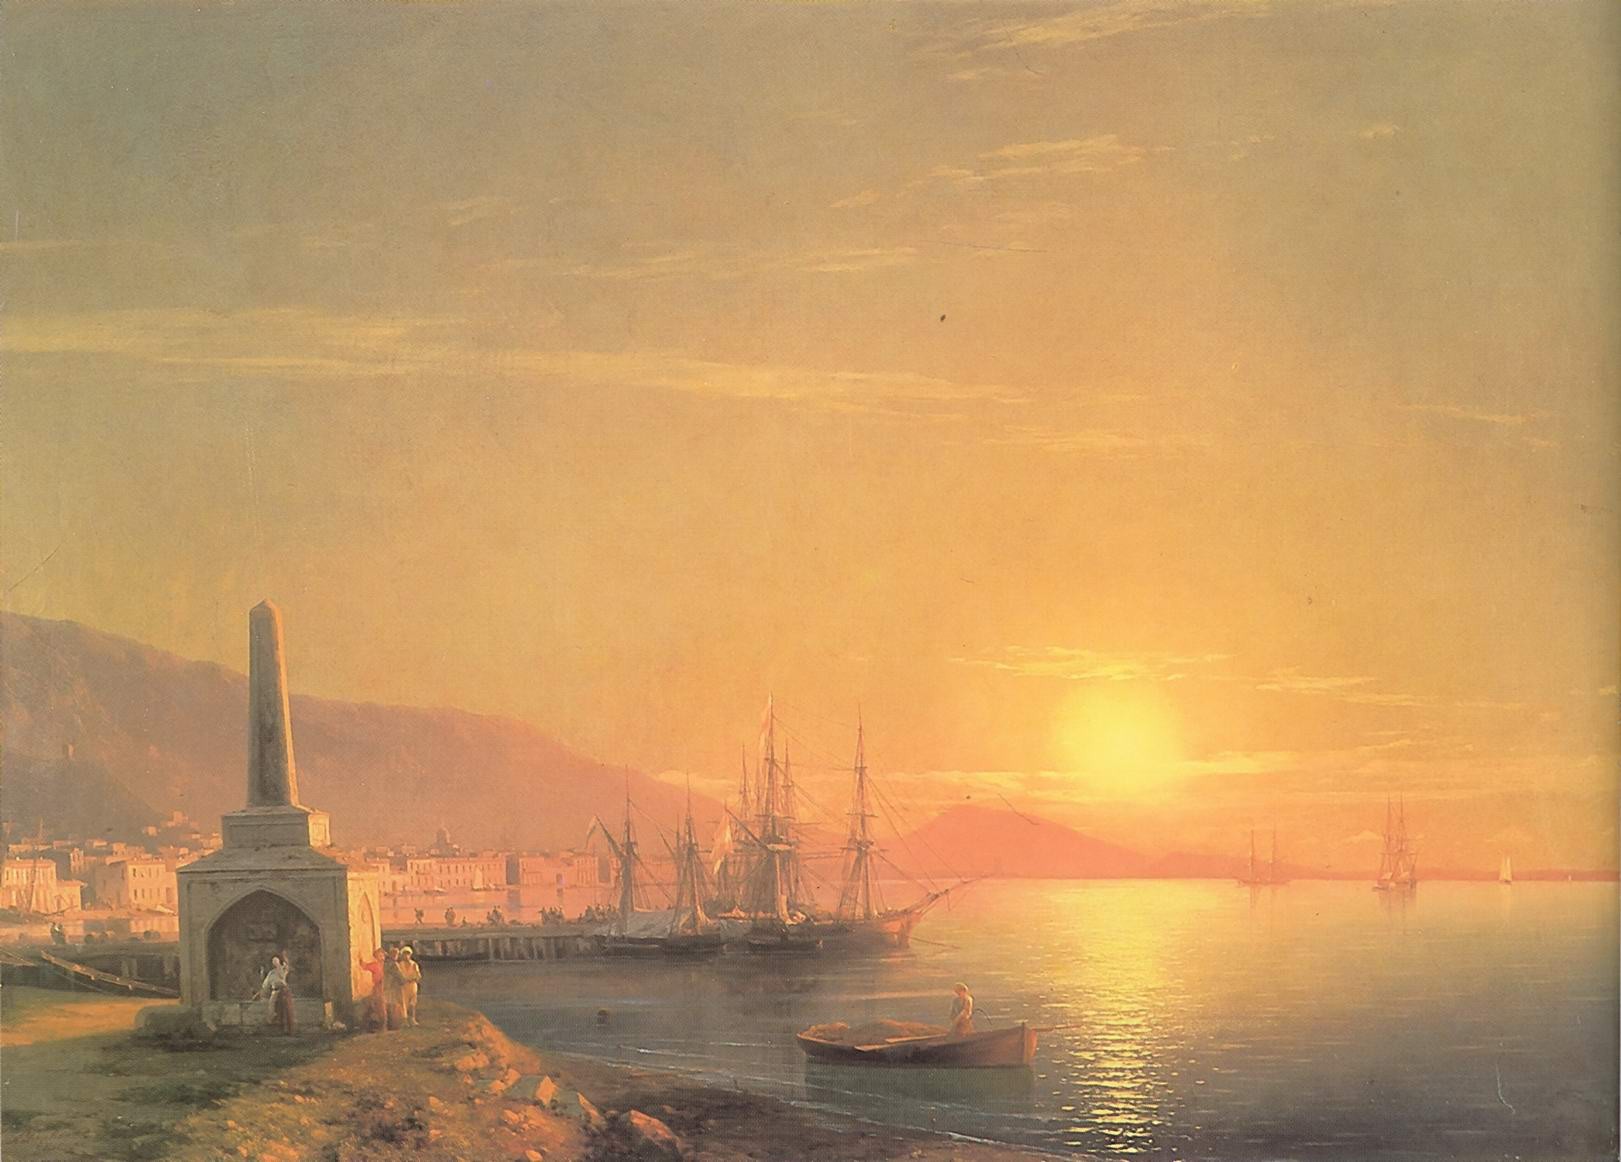 "Восход солнца в Феодосии". Иван Айвазовский. 1855 год